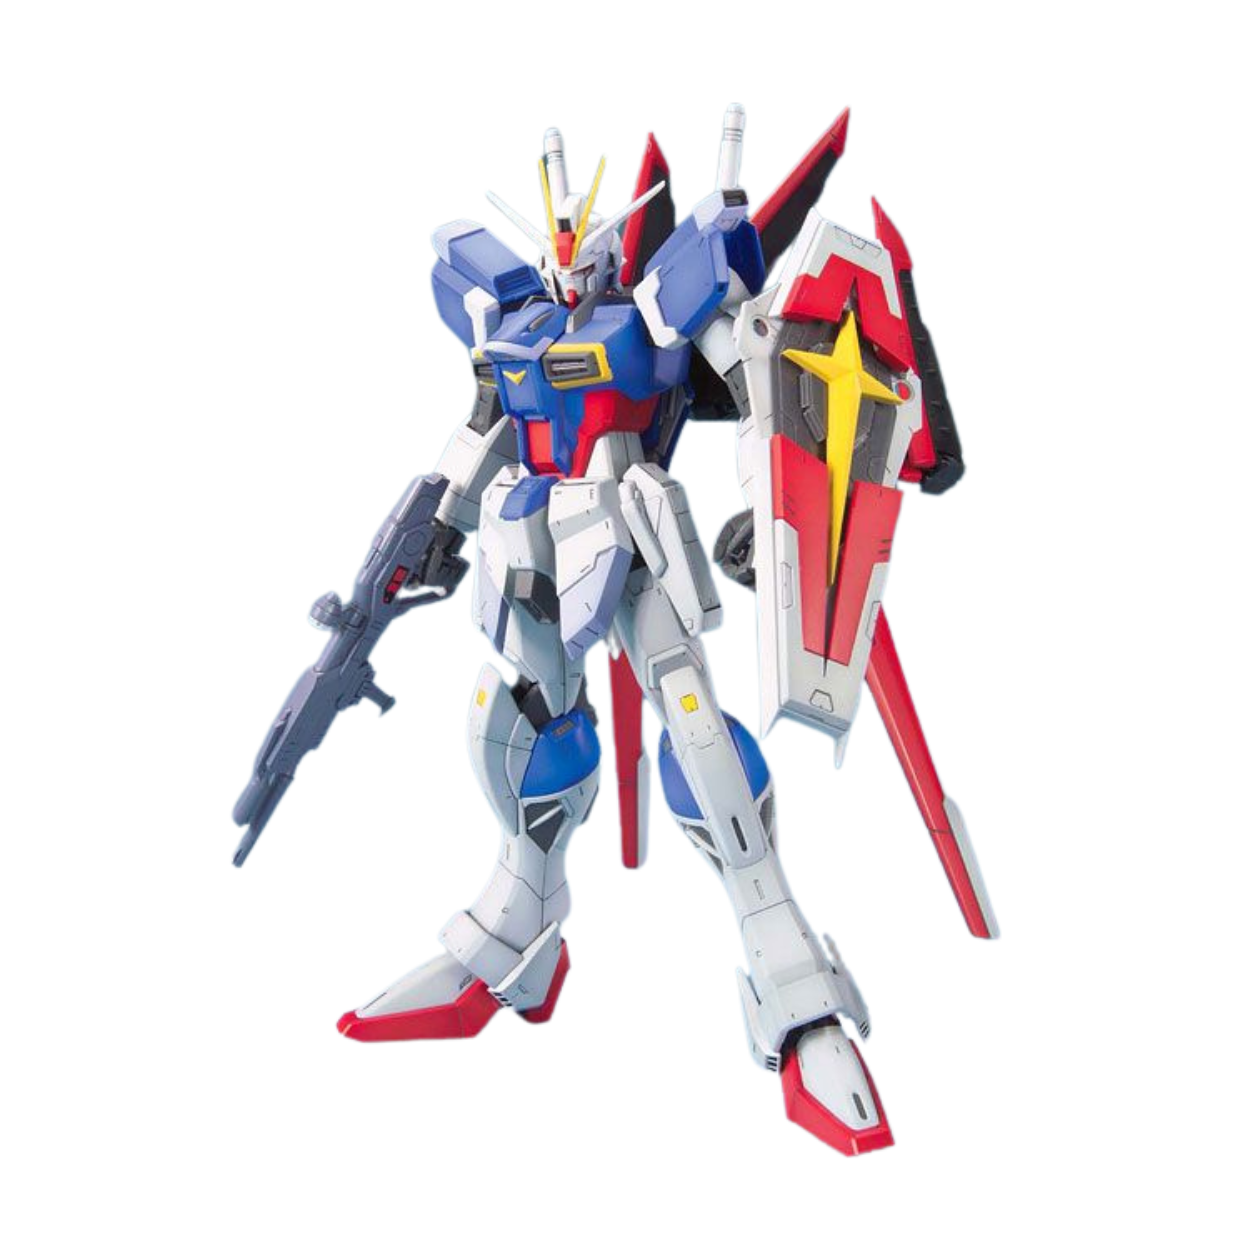 MG ZGMF-X56S Force Impulse Gundam Product Photo